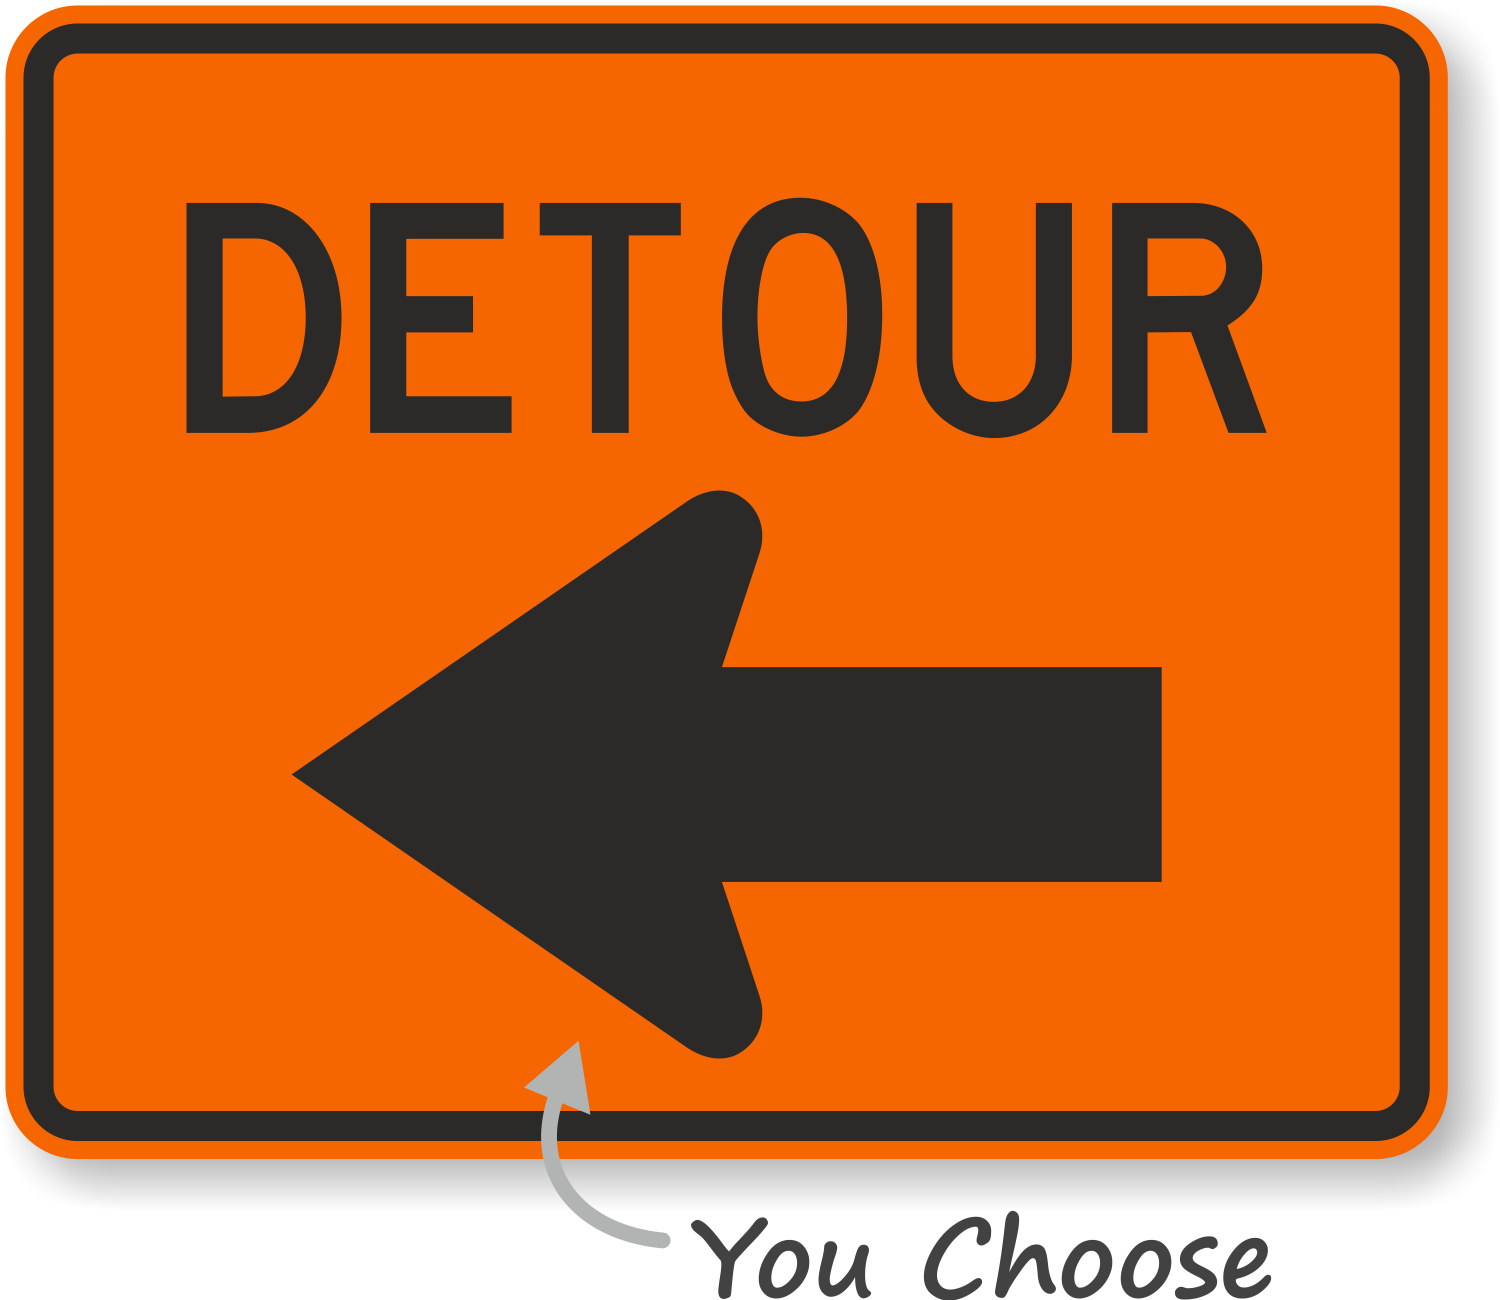 Detour Signs Detour Ahead Signs